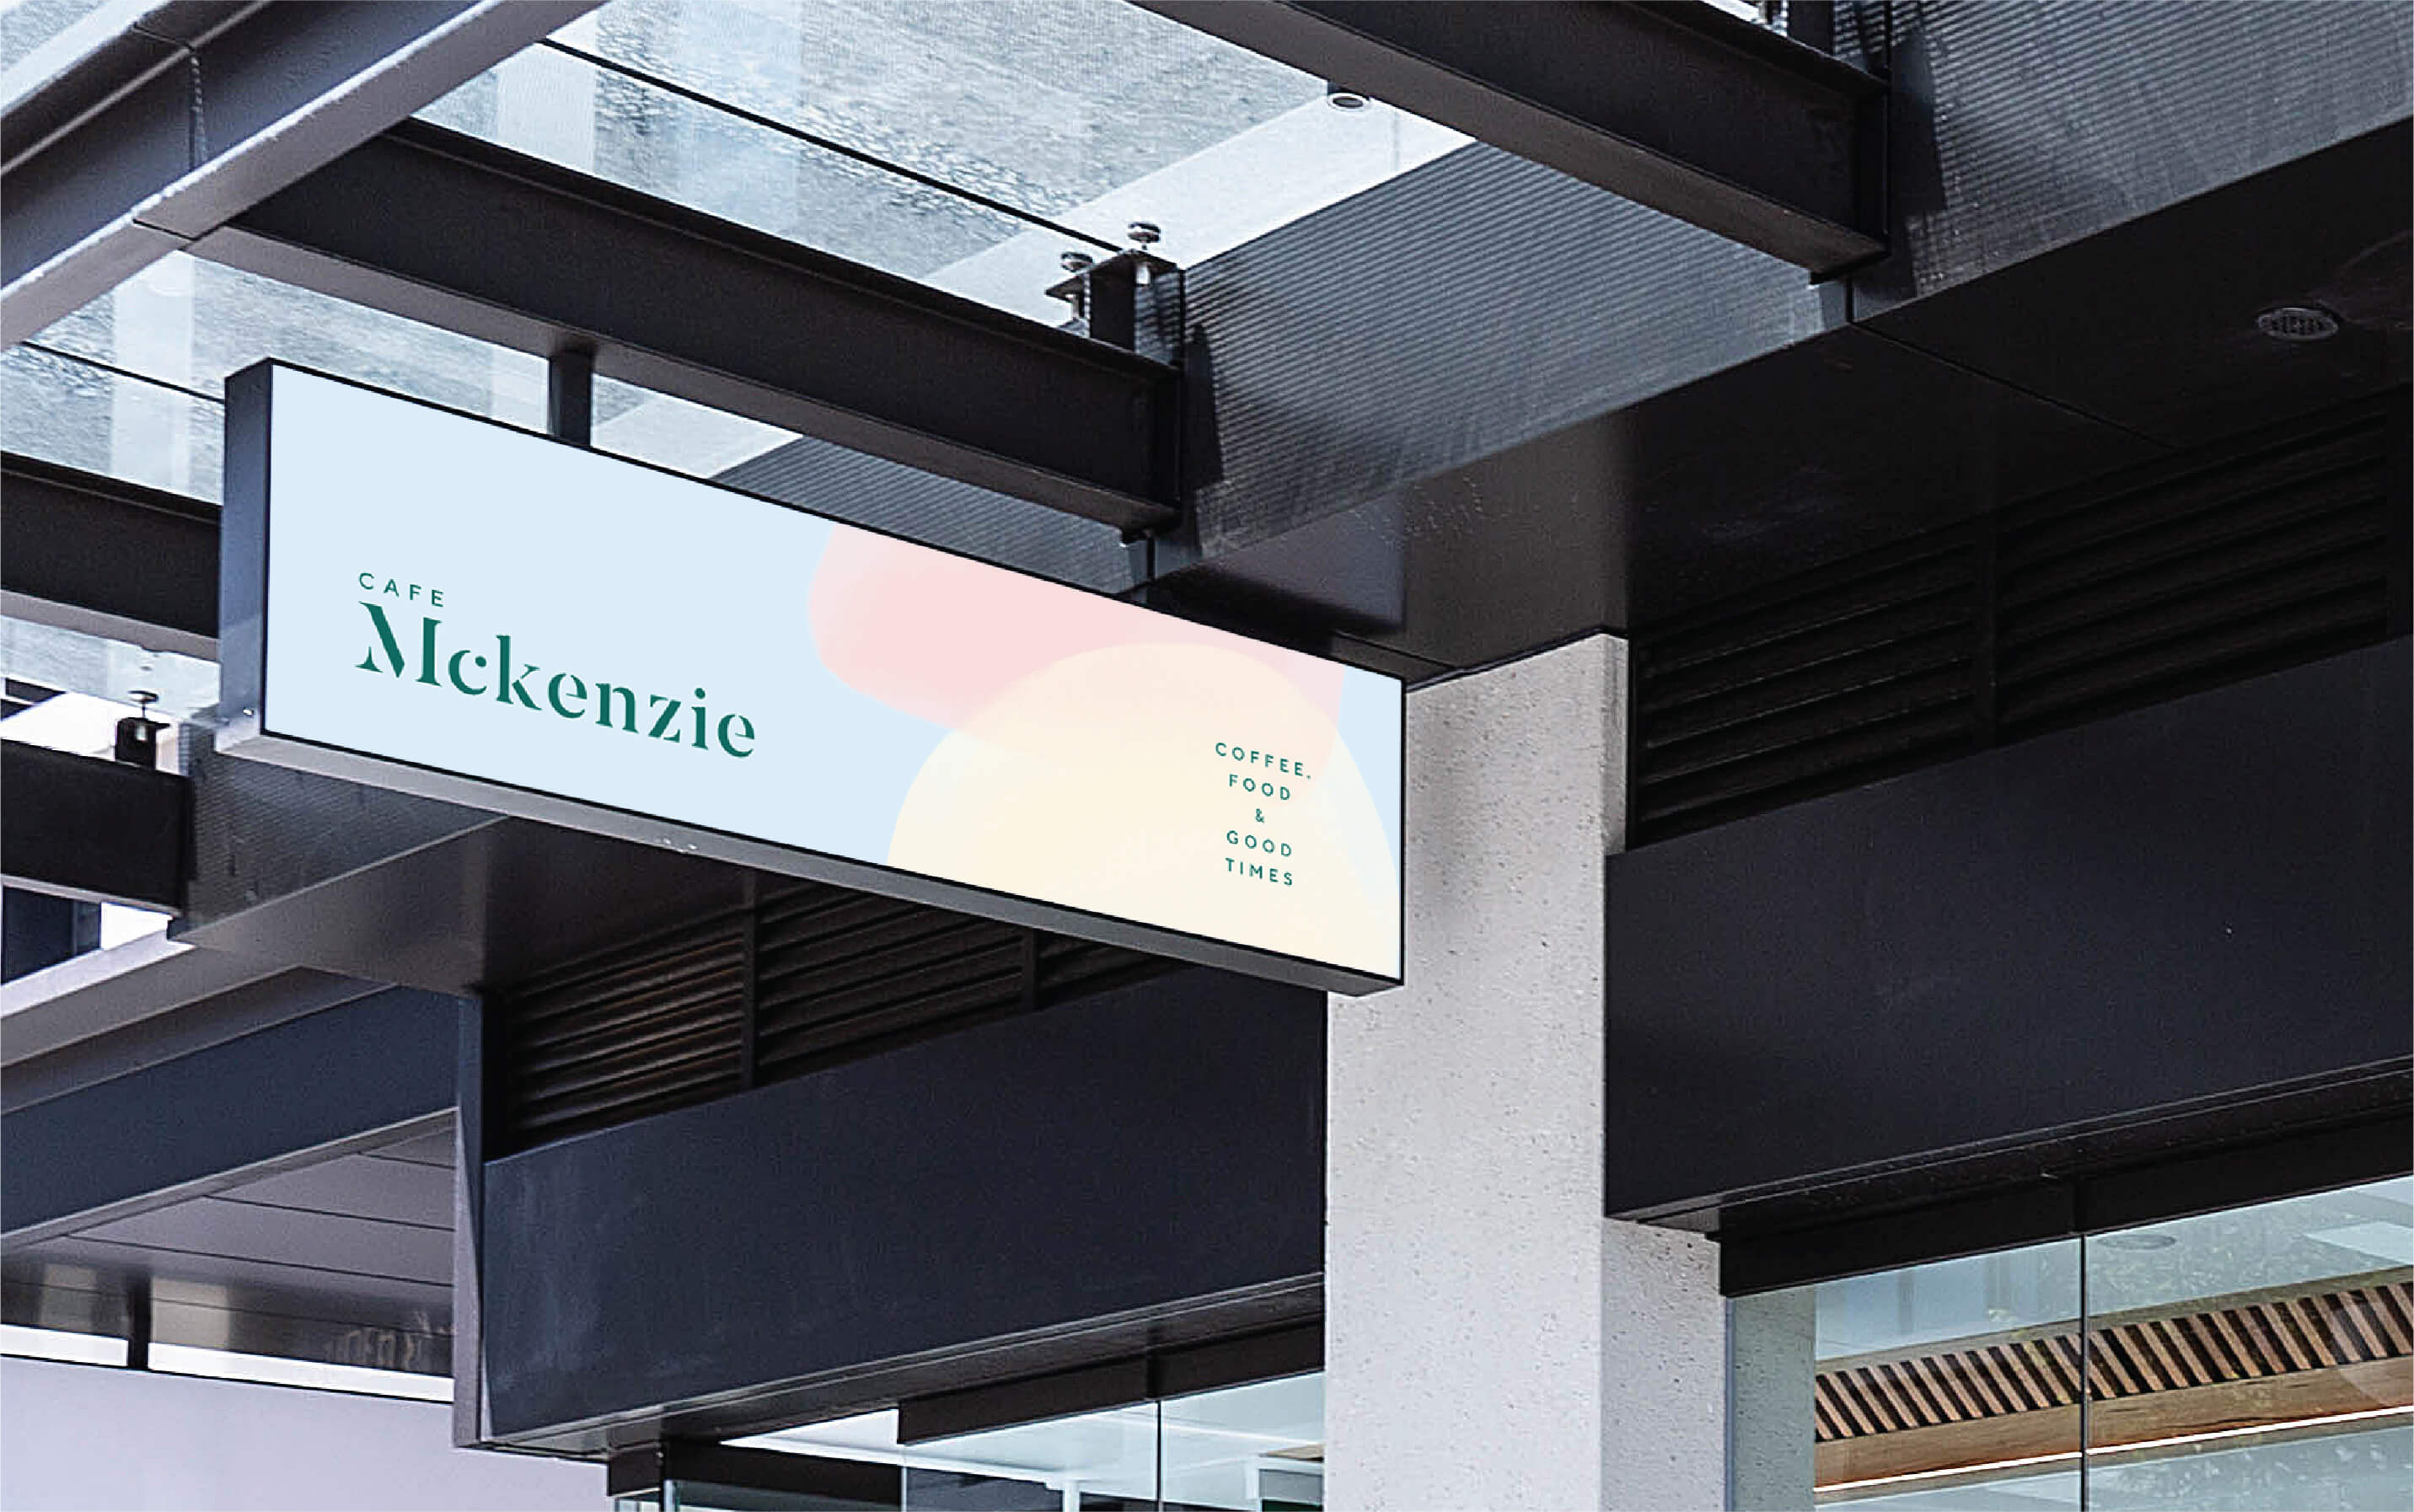 cafe-mckenzie-randwick-branding-design-cafe-A-01-06